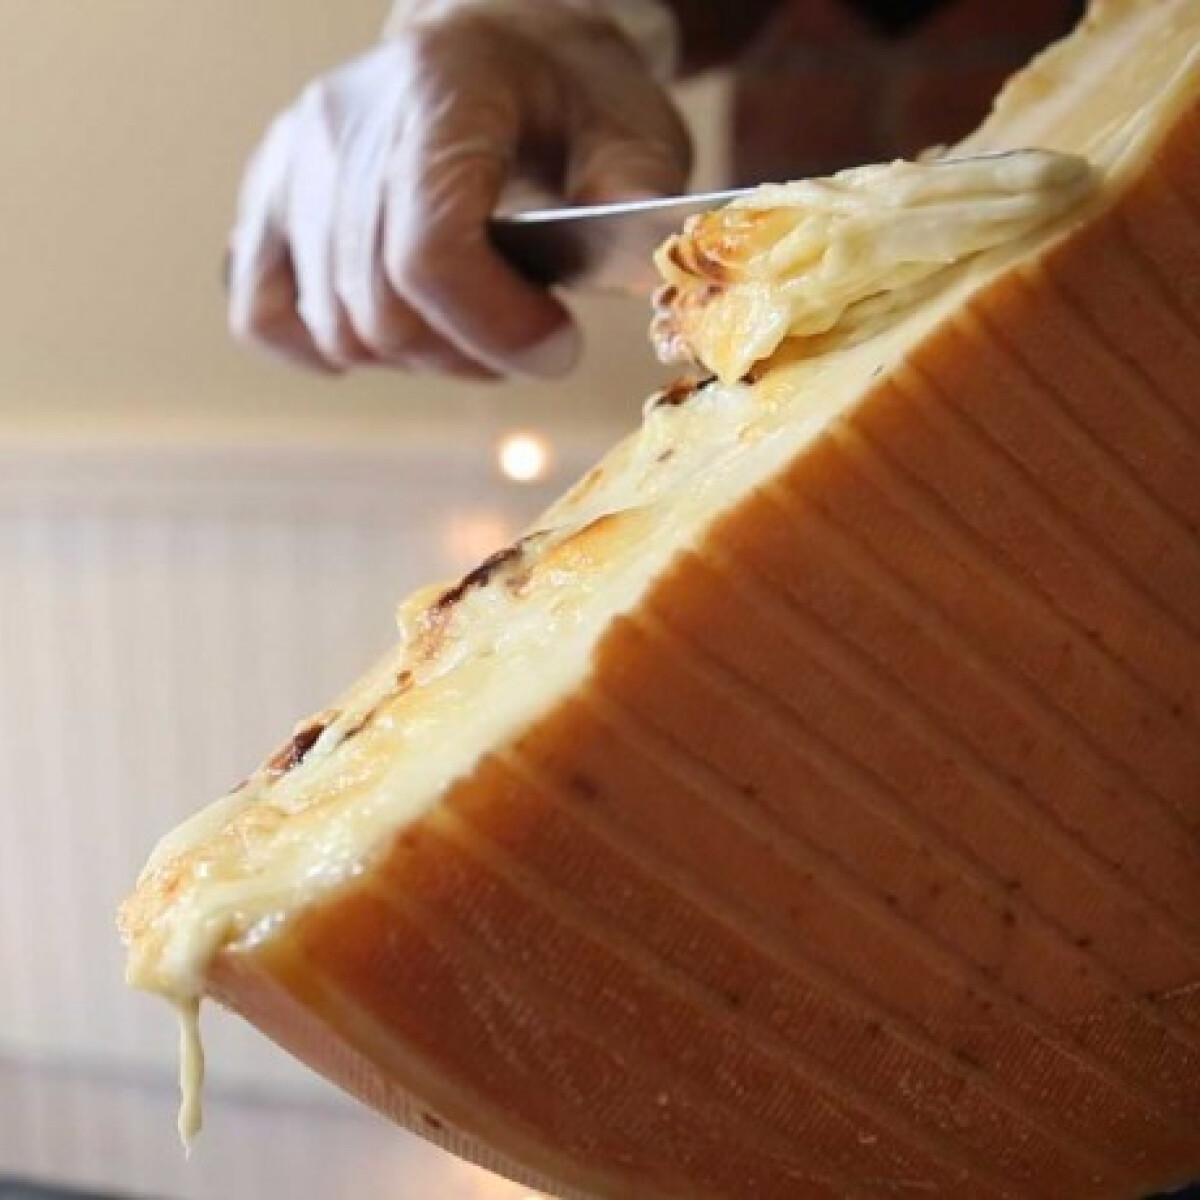 Ezt a videót nehogy megnézd, ha éhes sajtimádó vagy